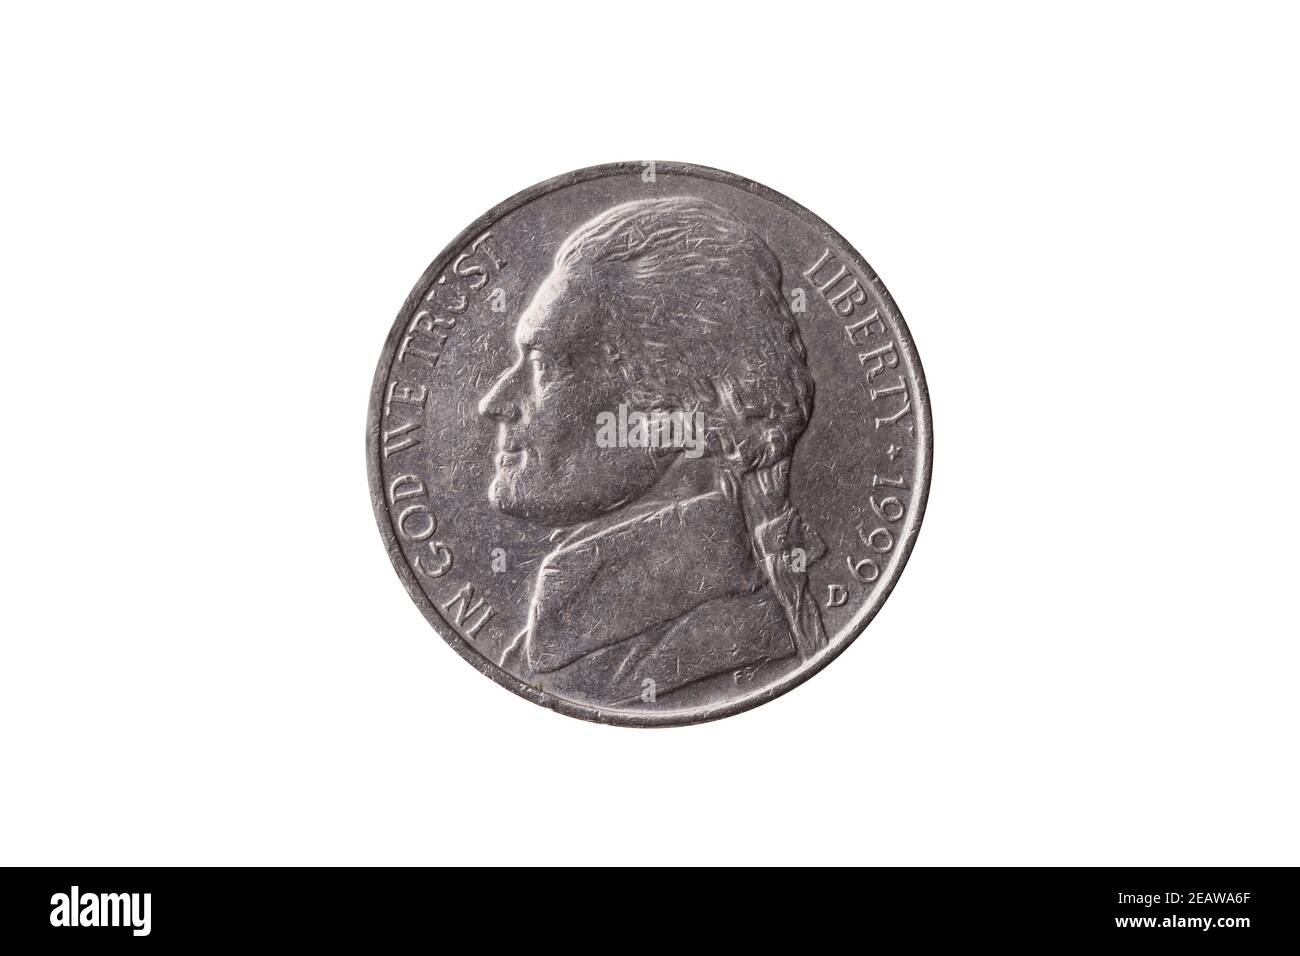 Moneta di nickel half dime USA (25 centesimi) Datato 1999 con un ritratto di Thomas Jefferson taglio fuori e isolato Foto Stock